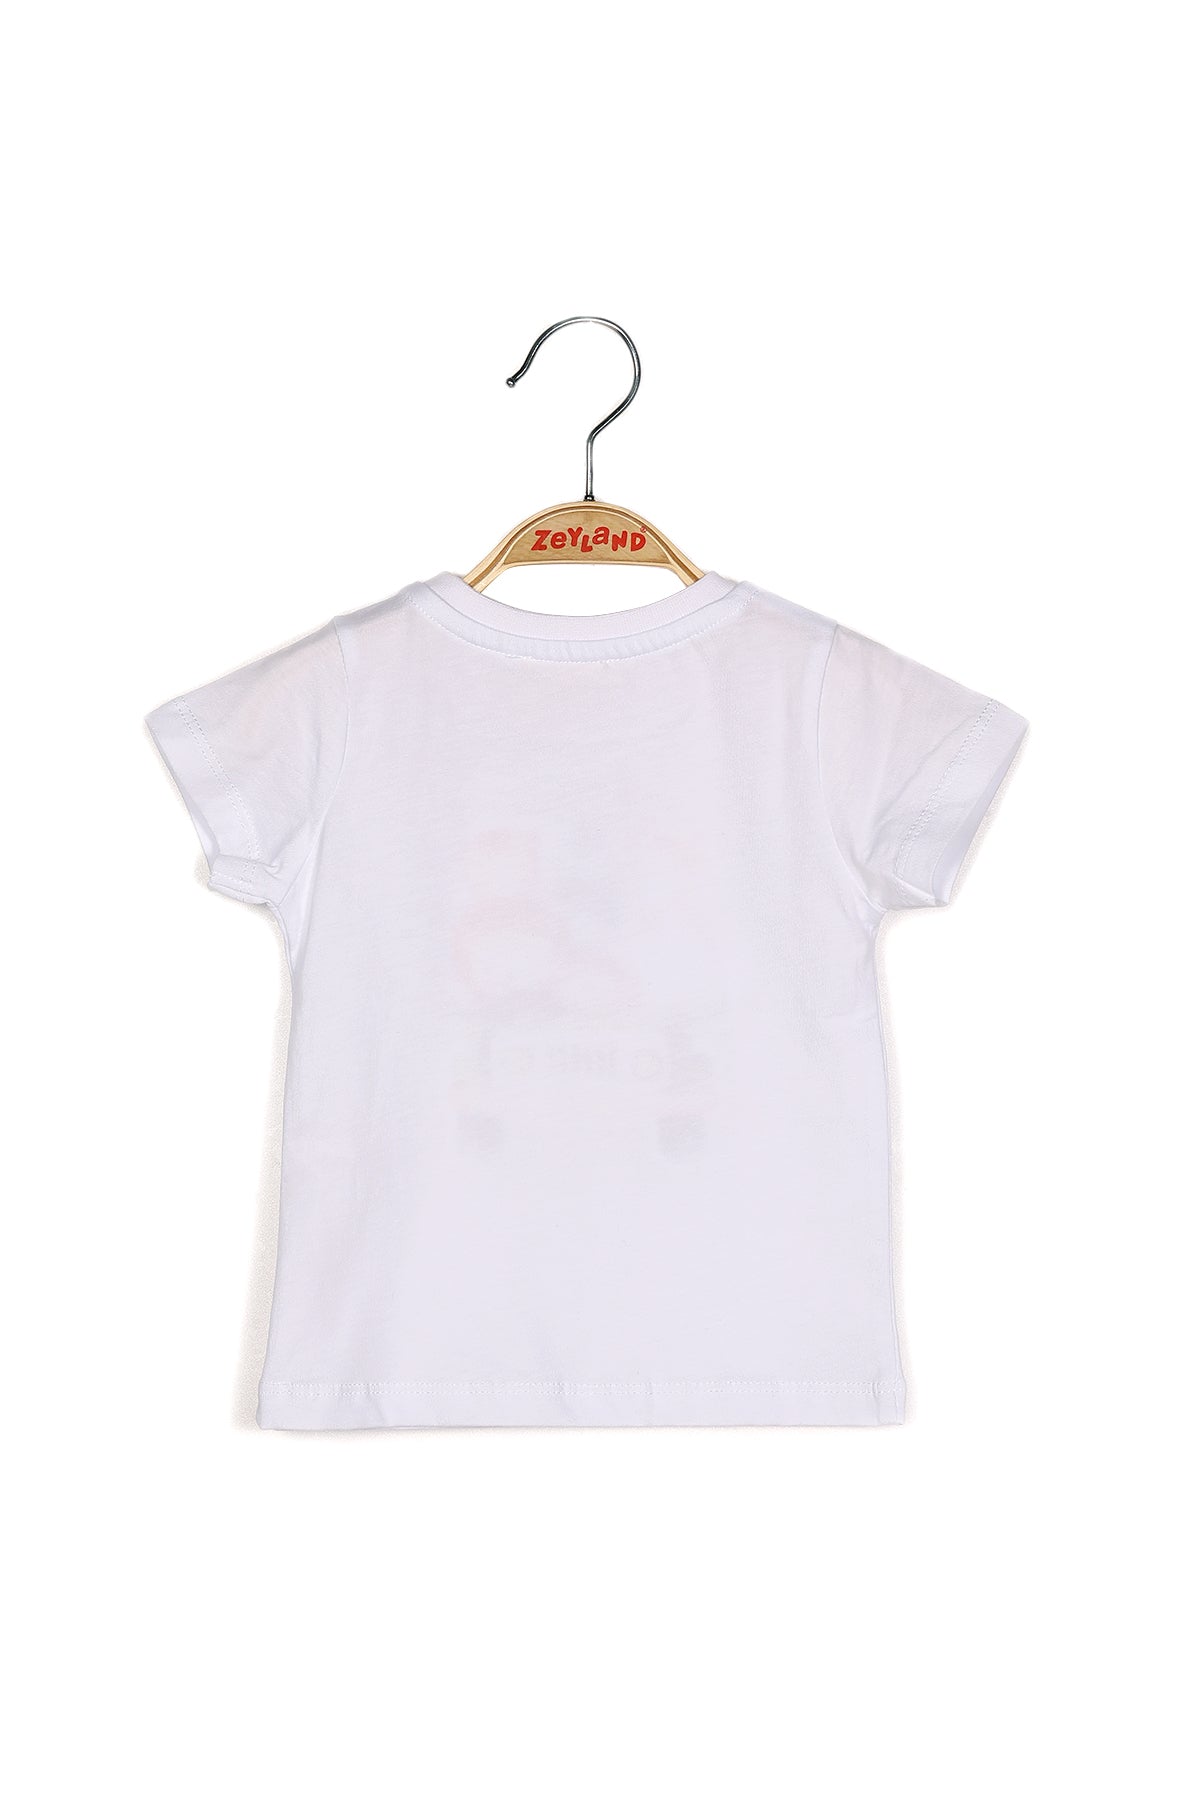 Erkek Bebek Baskılı Beyaz T-shirt-2